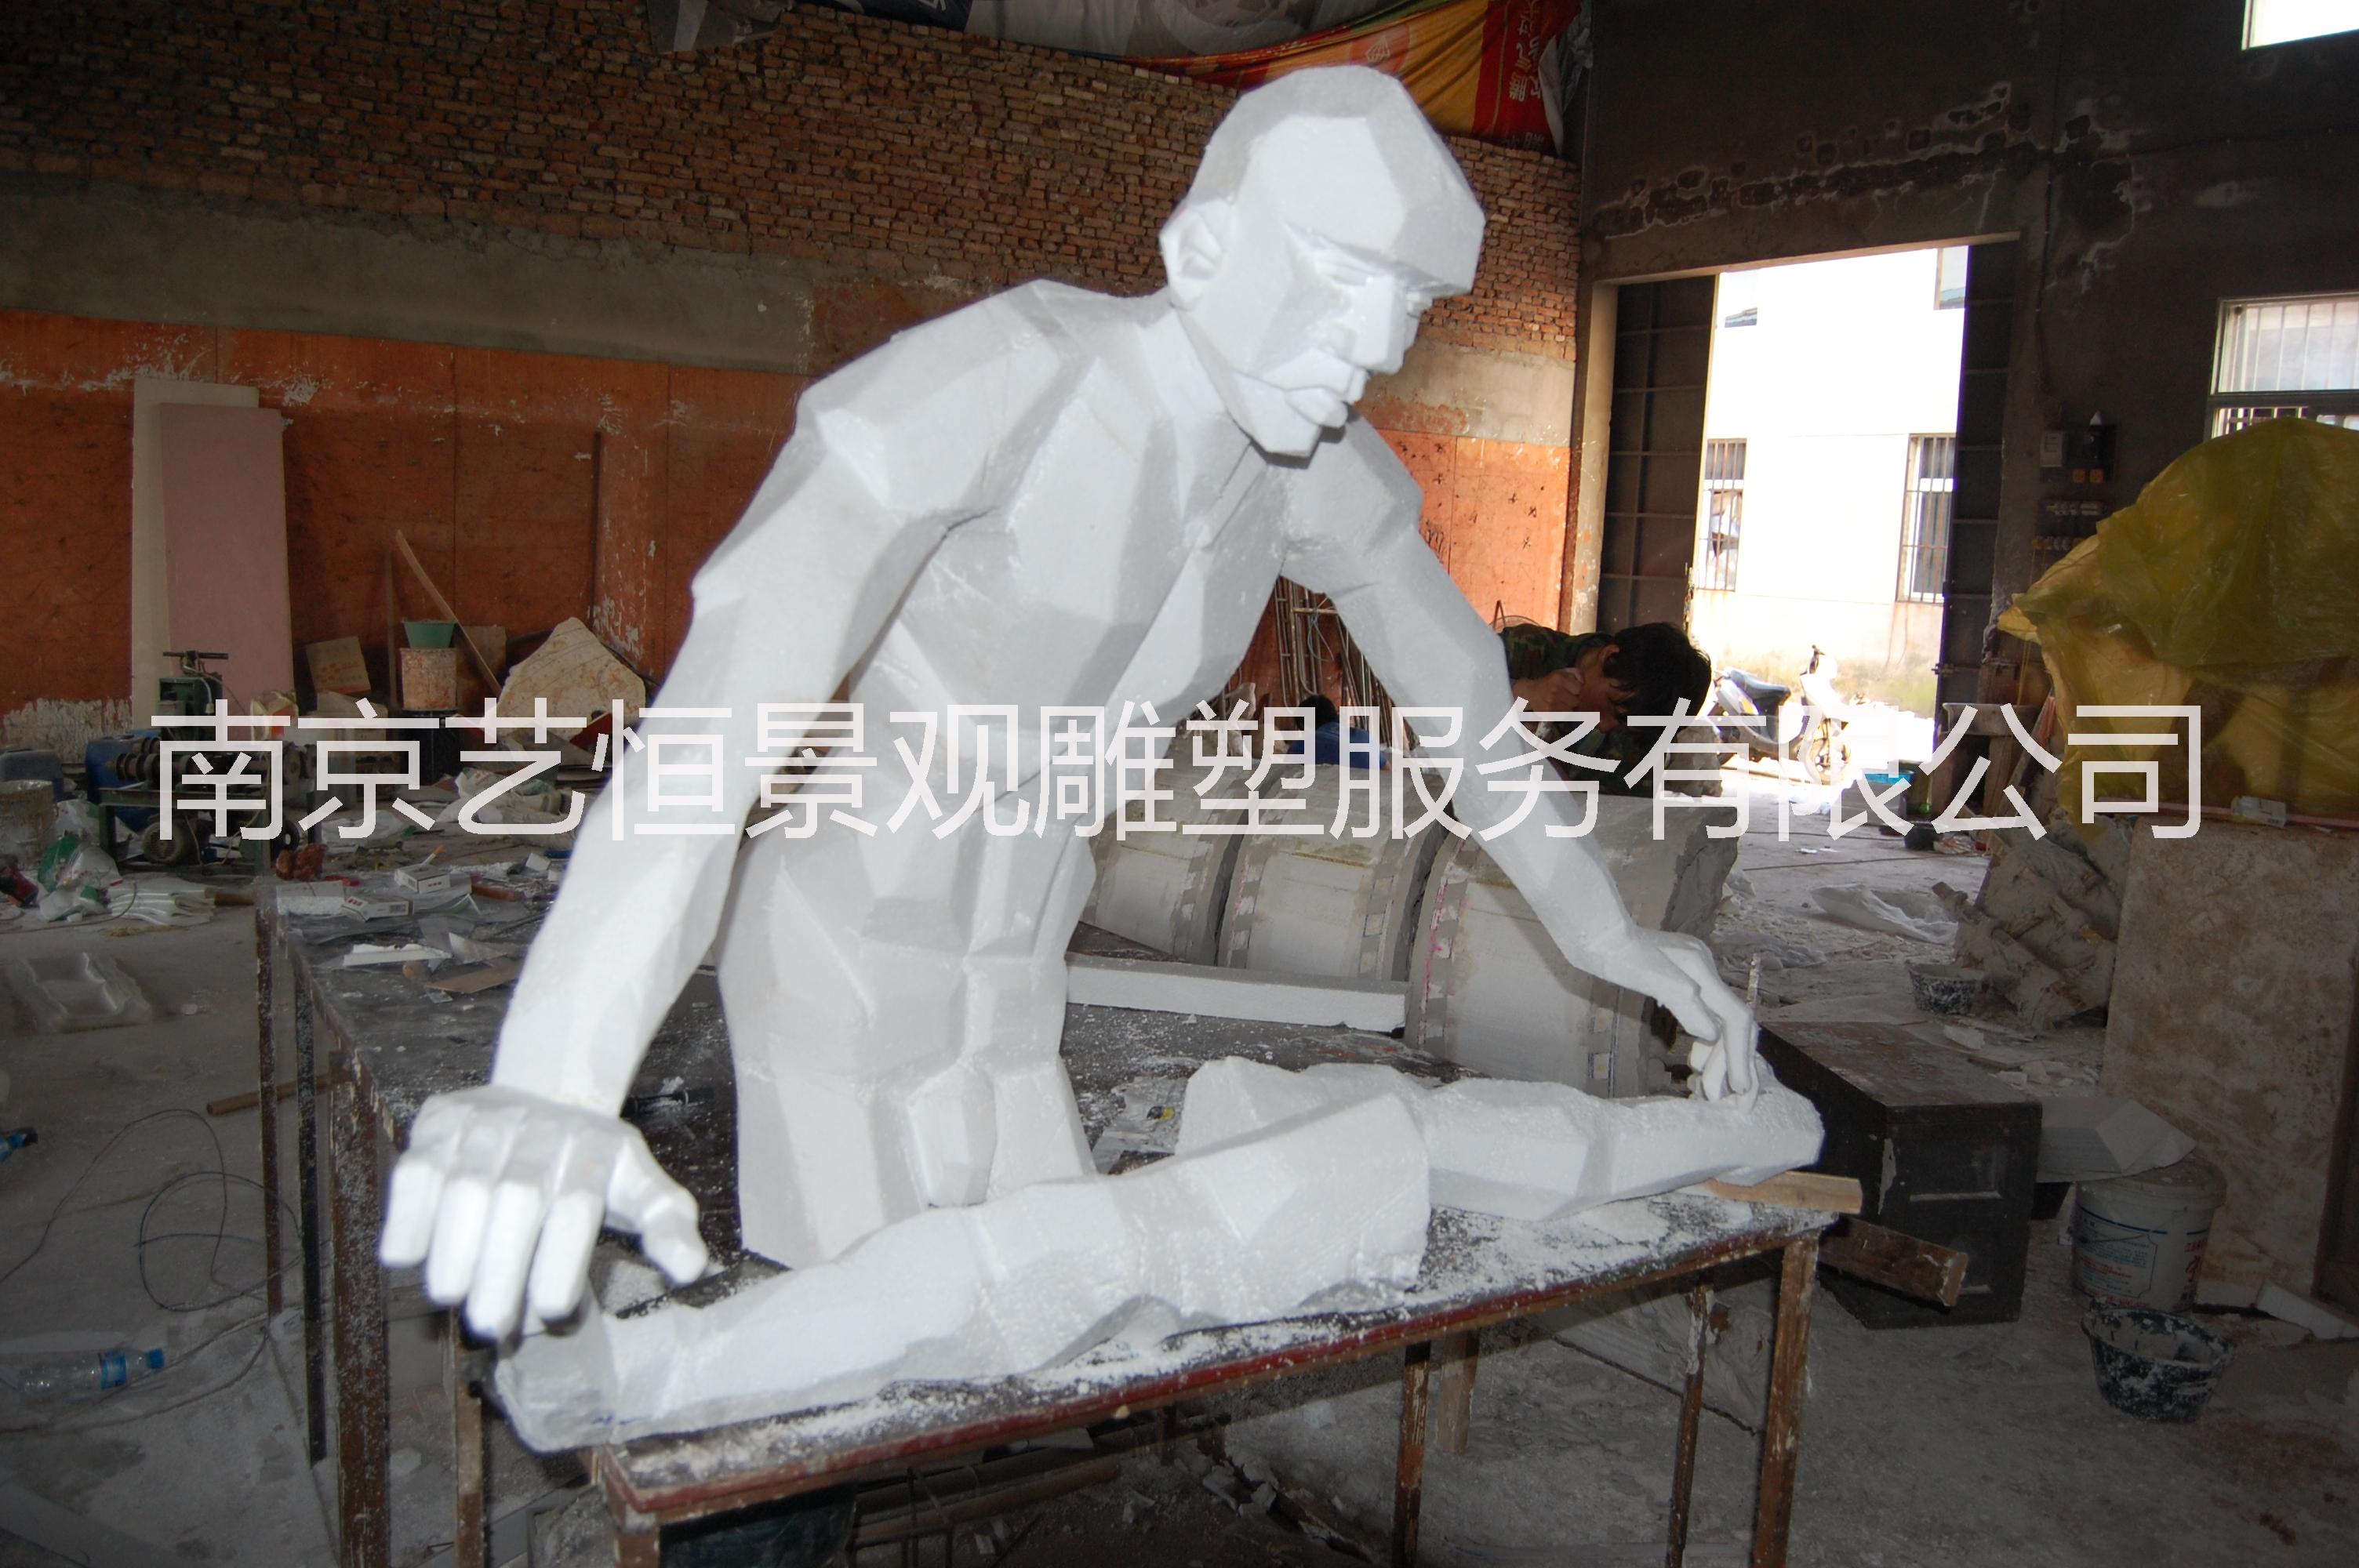 人物雕刻   南京雕塑厂做人物雕刻 人物雕塑 雕刻人像